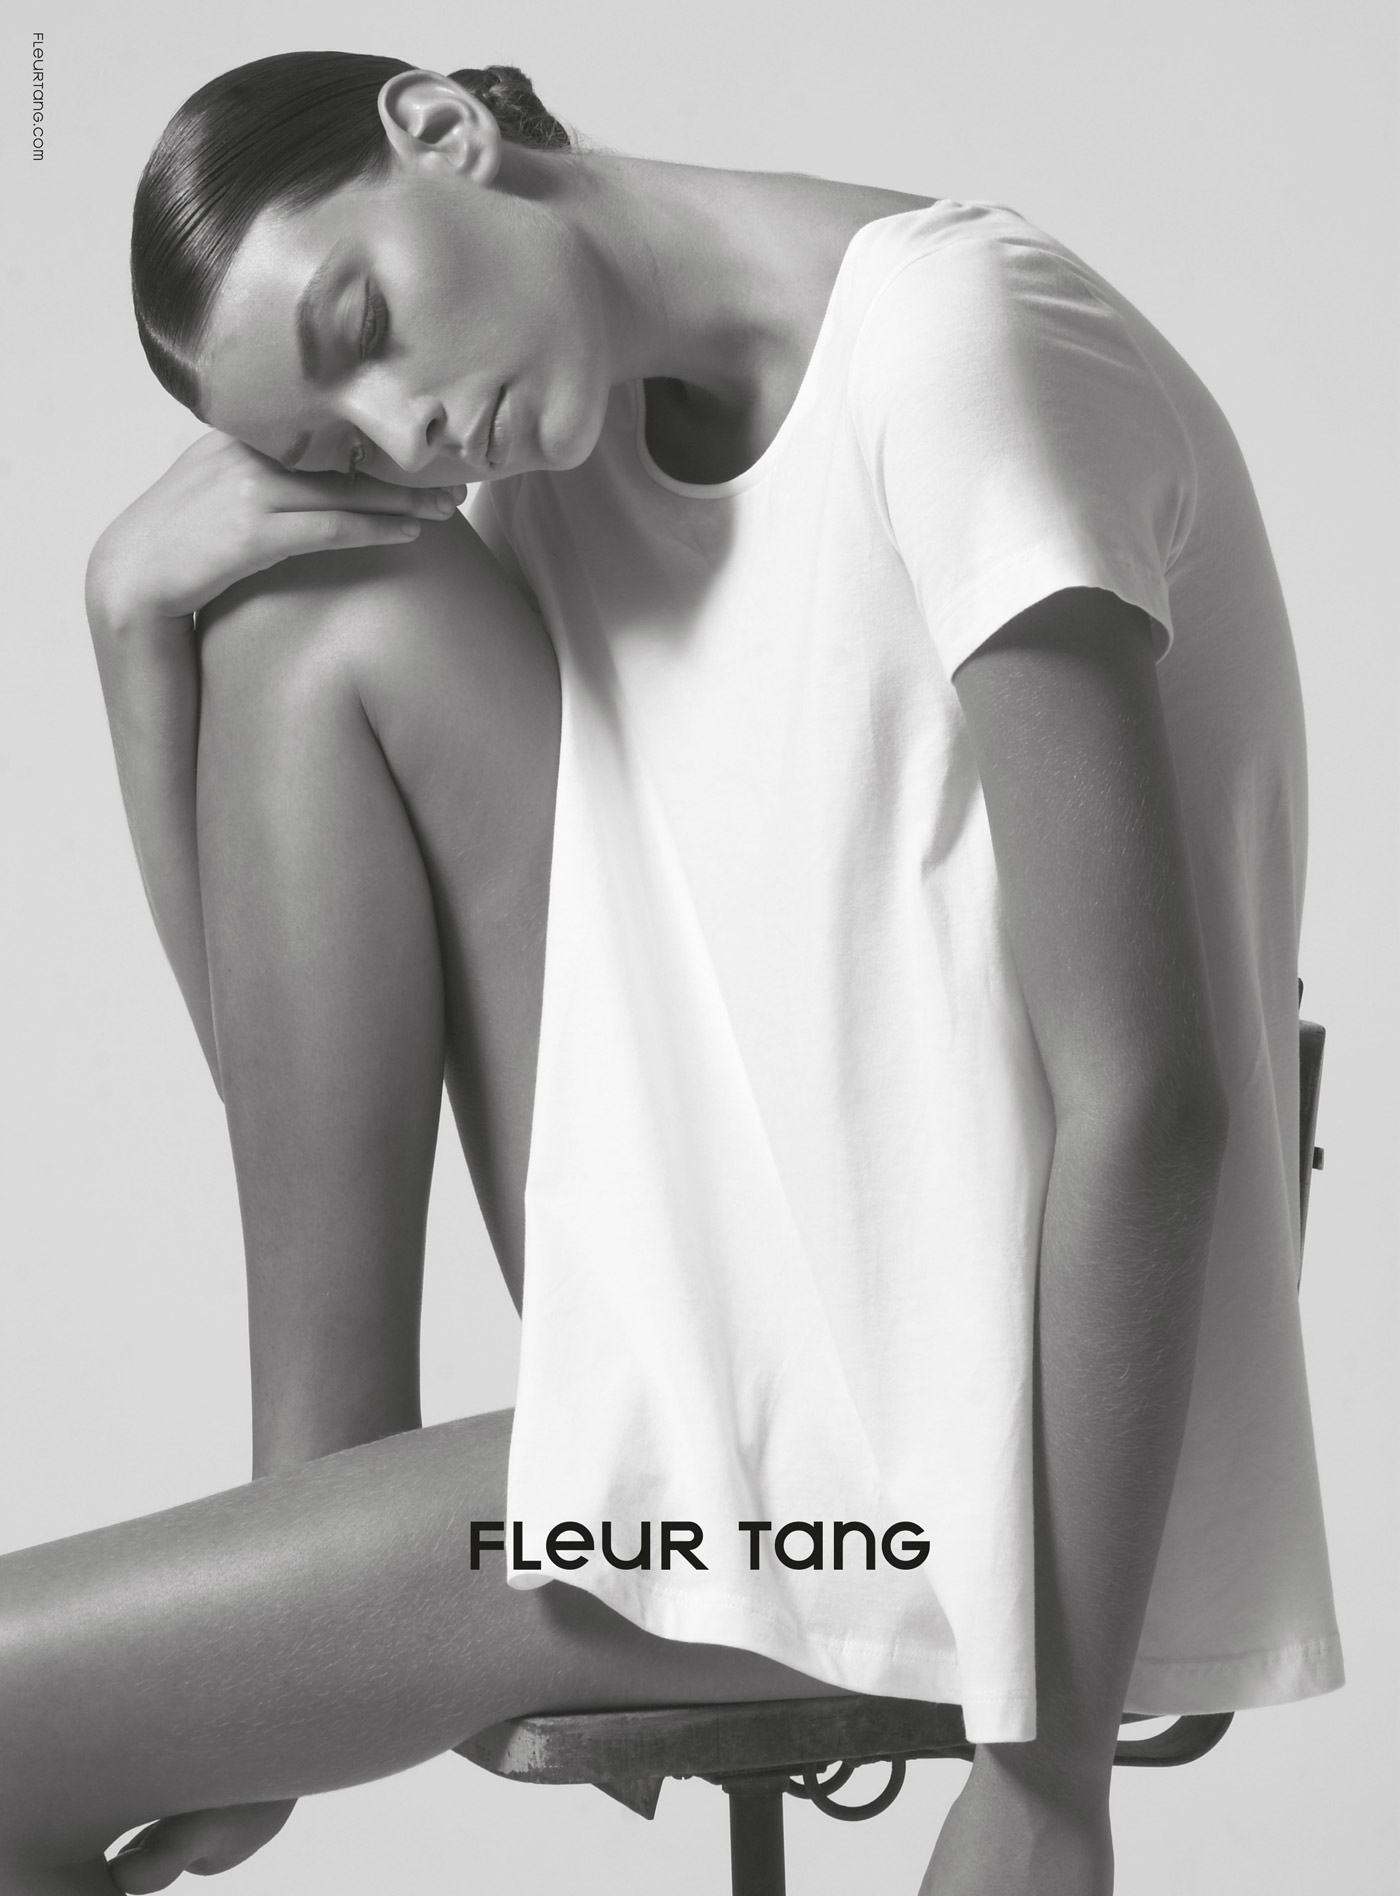 Fleur Tang organic cotton – Advertising